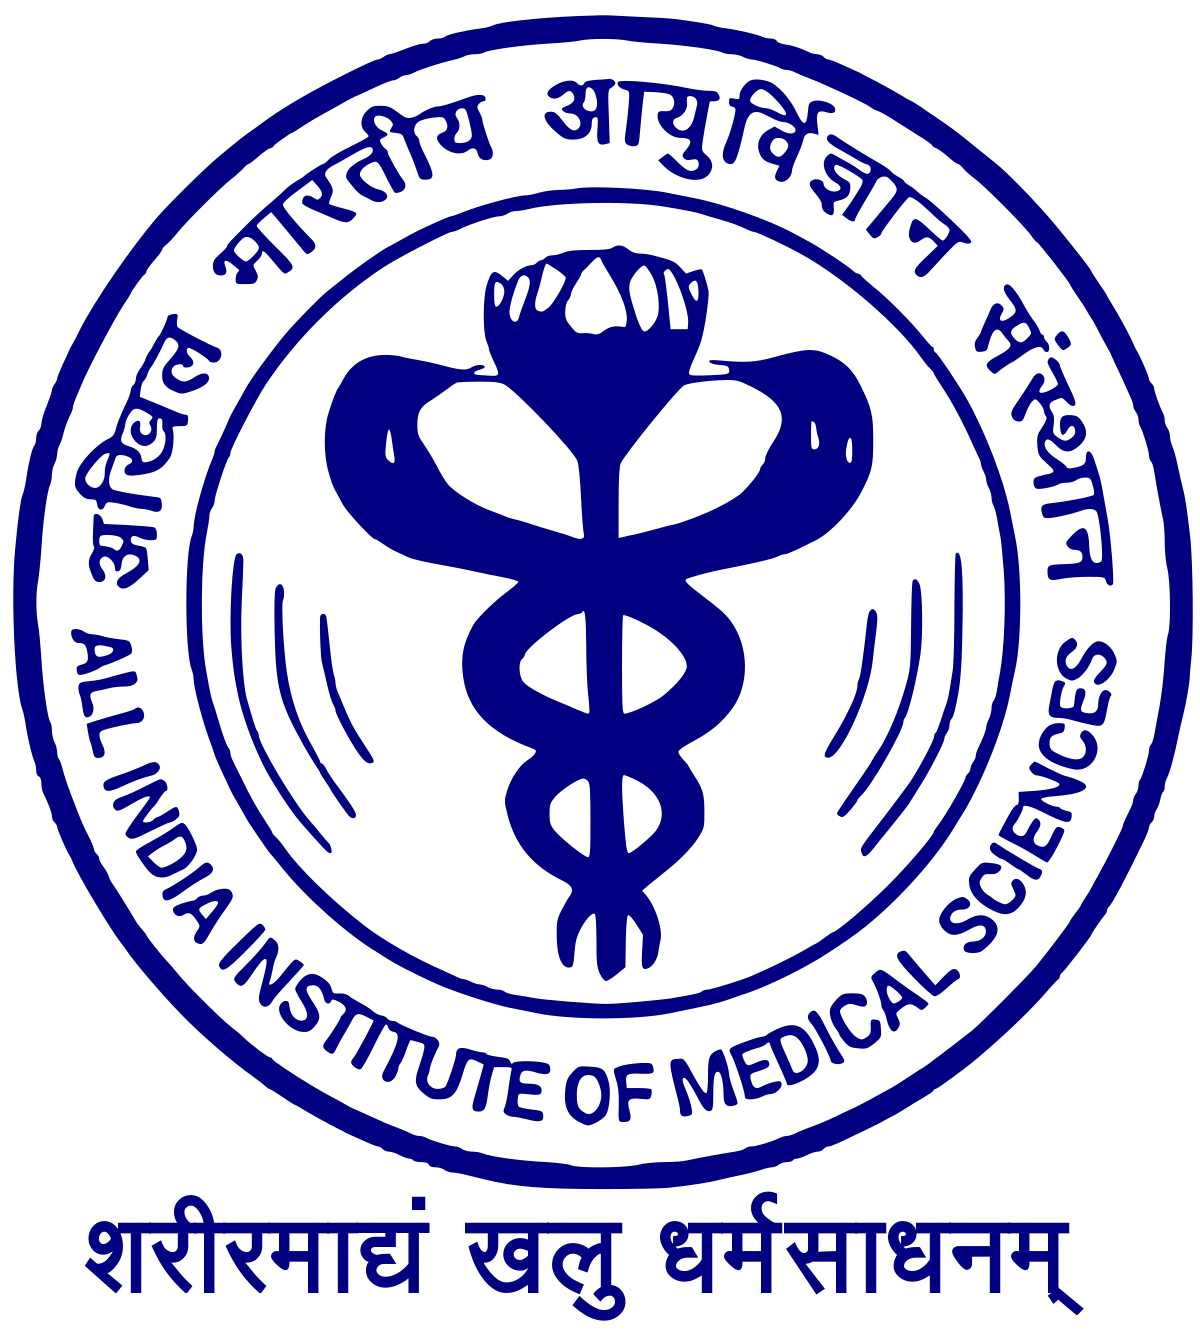 Regional Institute of Medical Sciences, Imphal